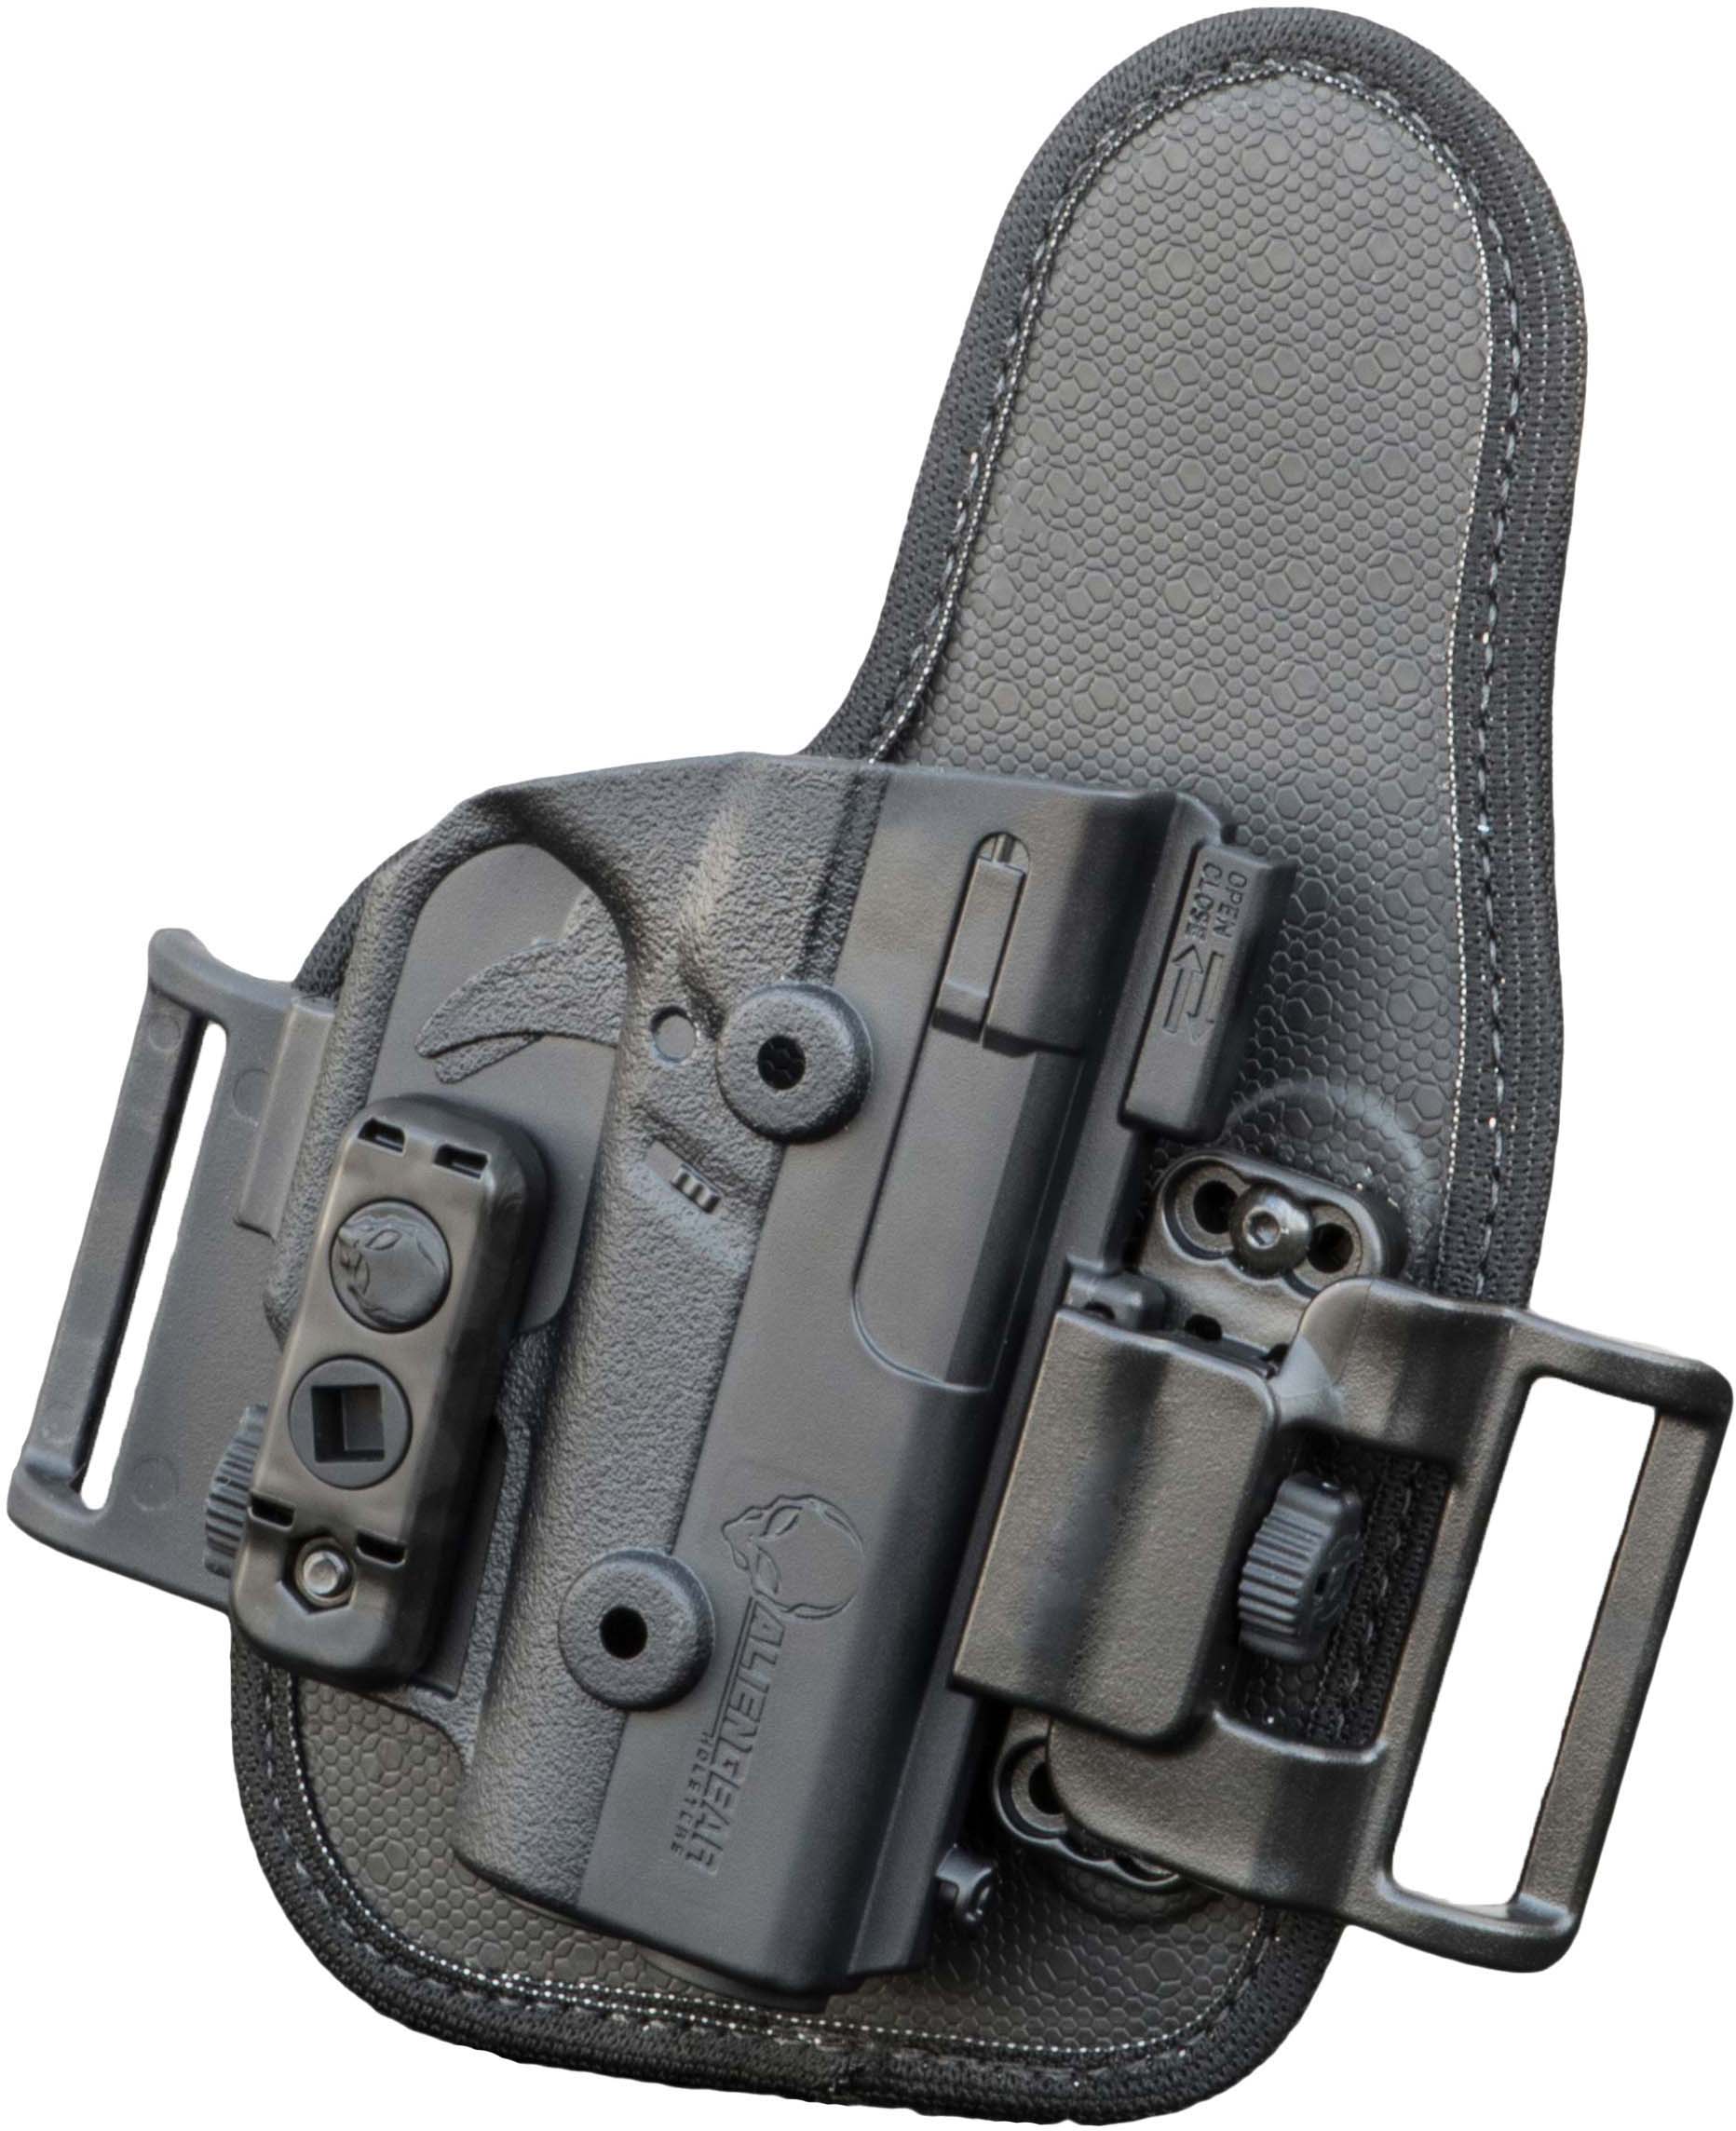 Buy ShapeShift IWB Holster for Glock 17